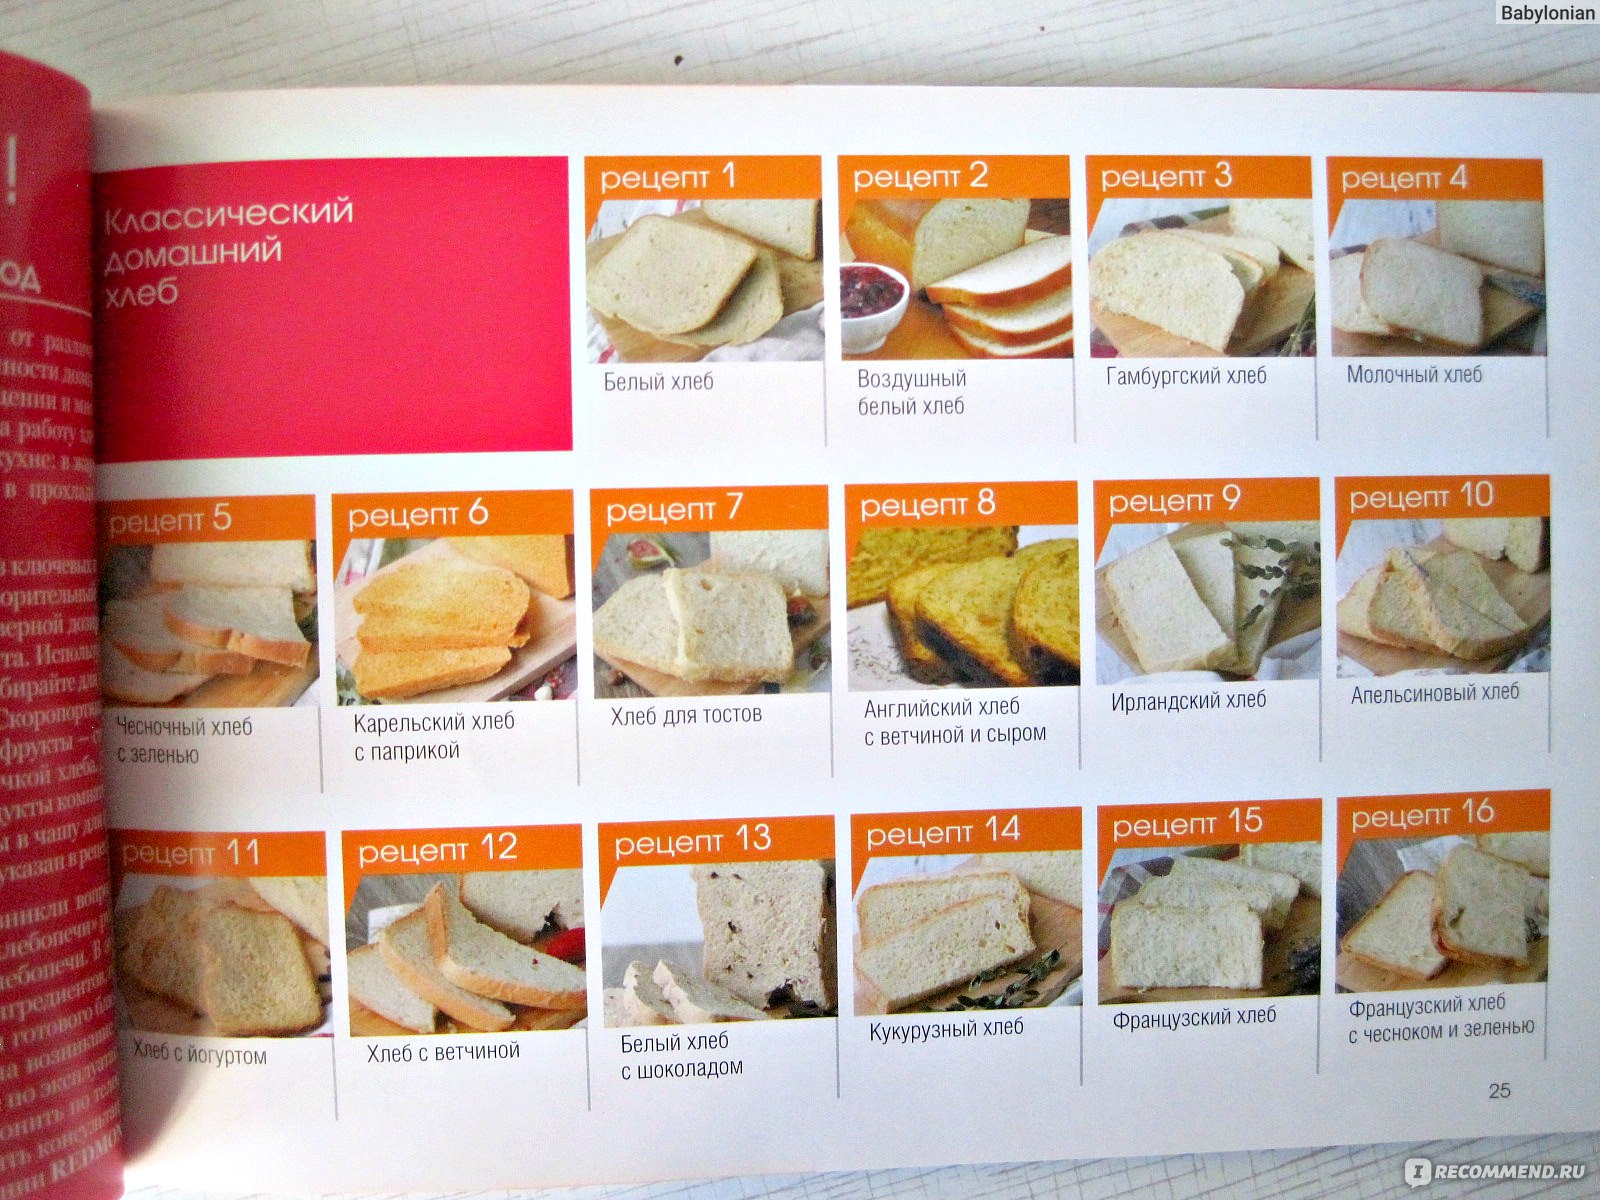 Redmond рецепт хлеба. Книжка с рецептами для хлебопечки редмонд. Книга рецептов для хлебопечки редмонд. Книга для хлебопечки. Хлеб в хлебопечке редмонд.